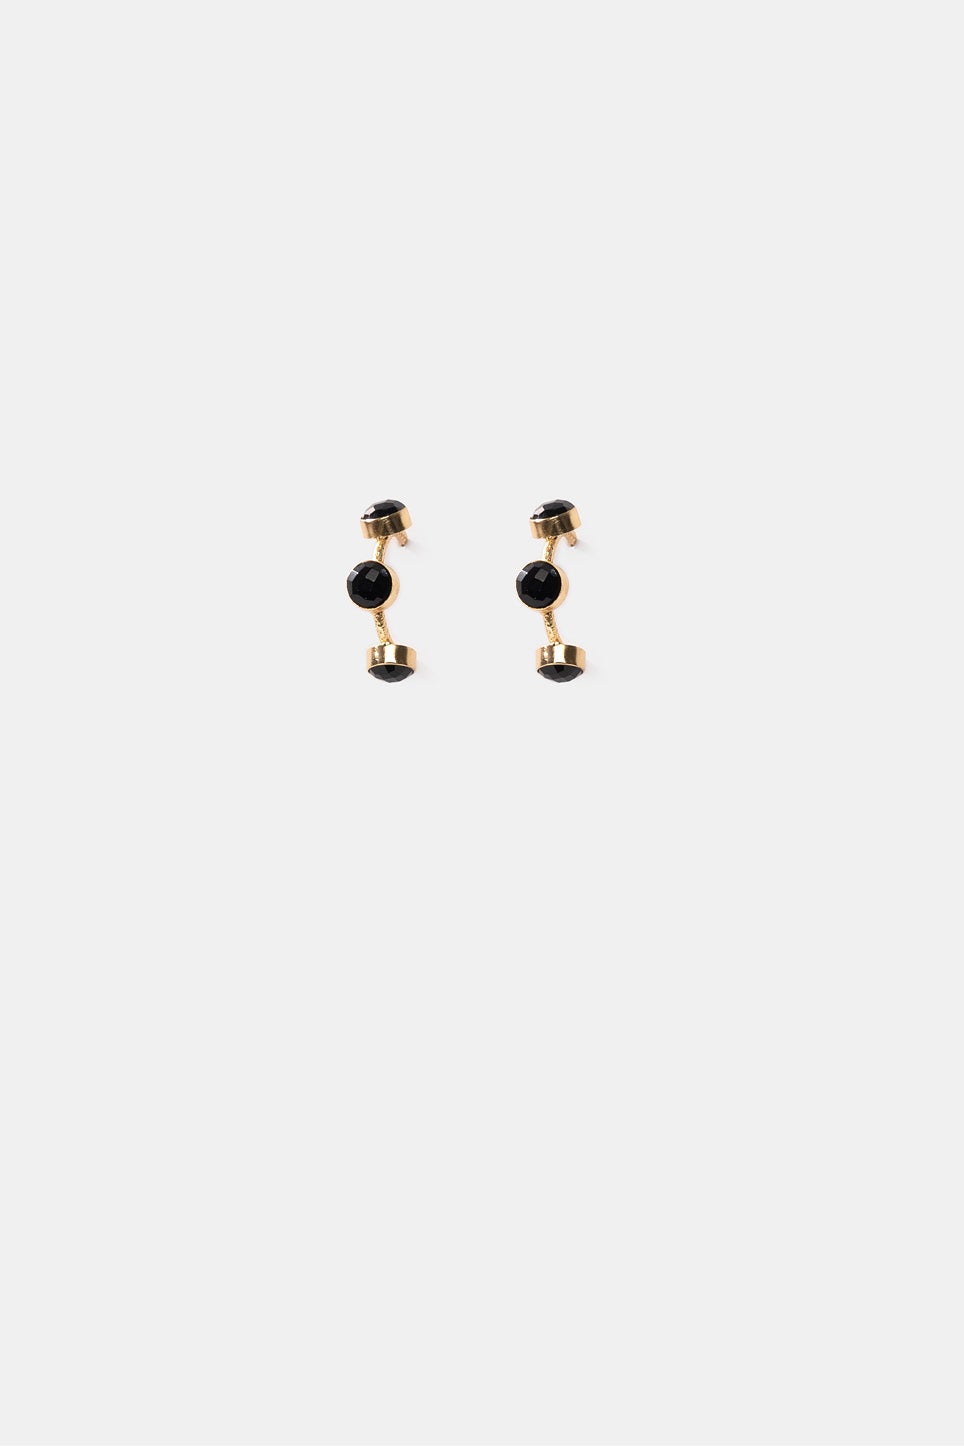 Kasis Black Gem Silver Plated Stud Earrings for Women  Amazonin Jewellery